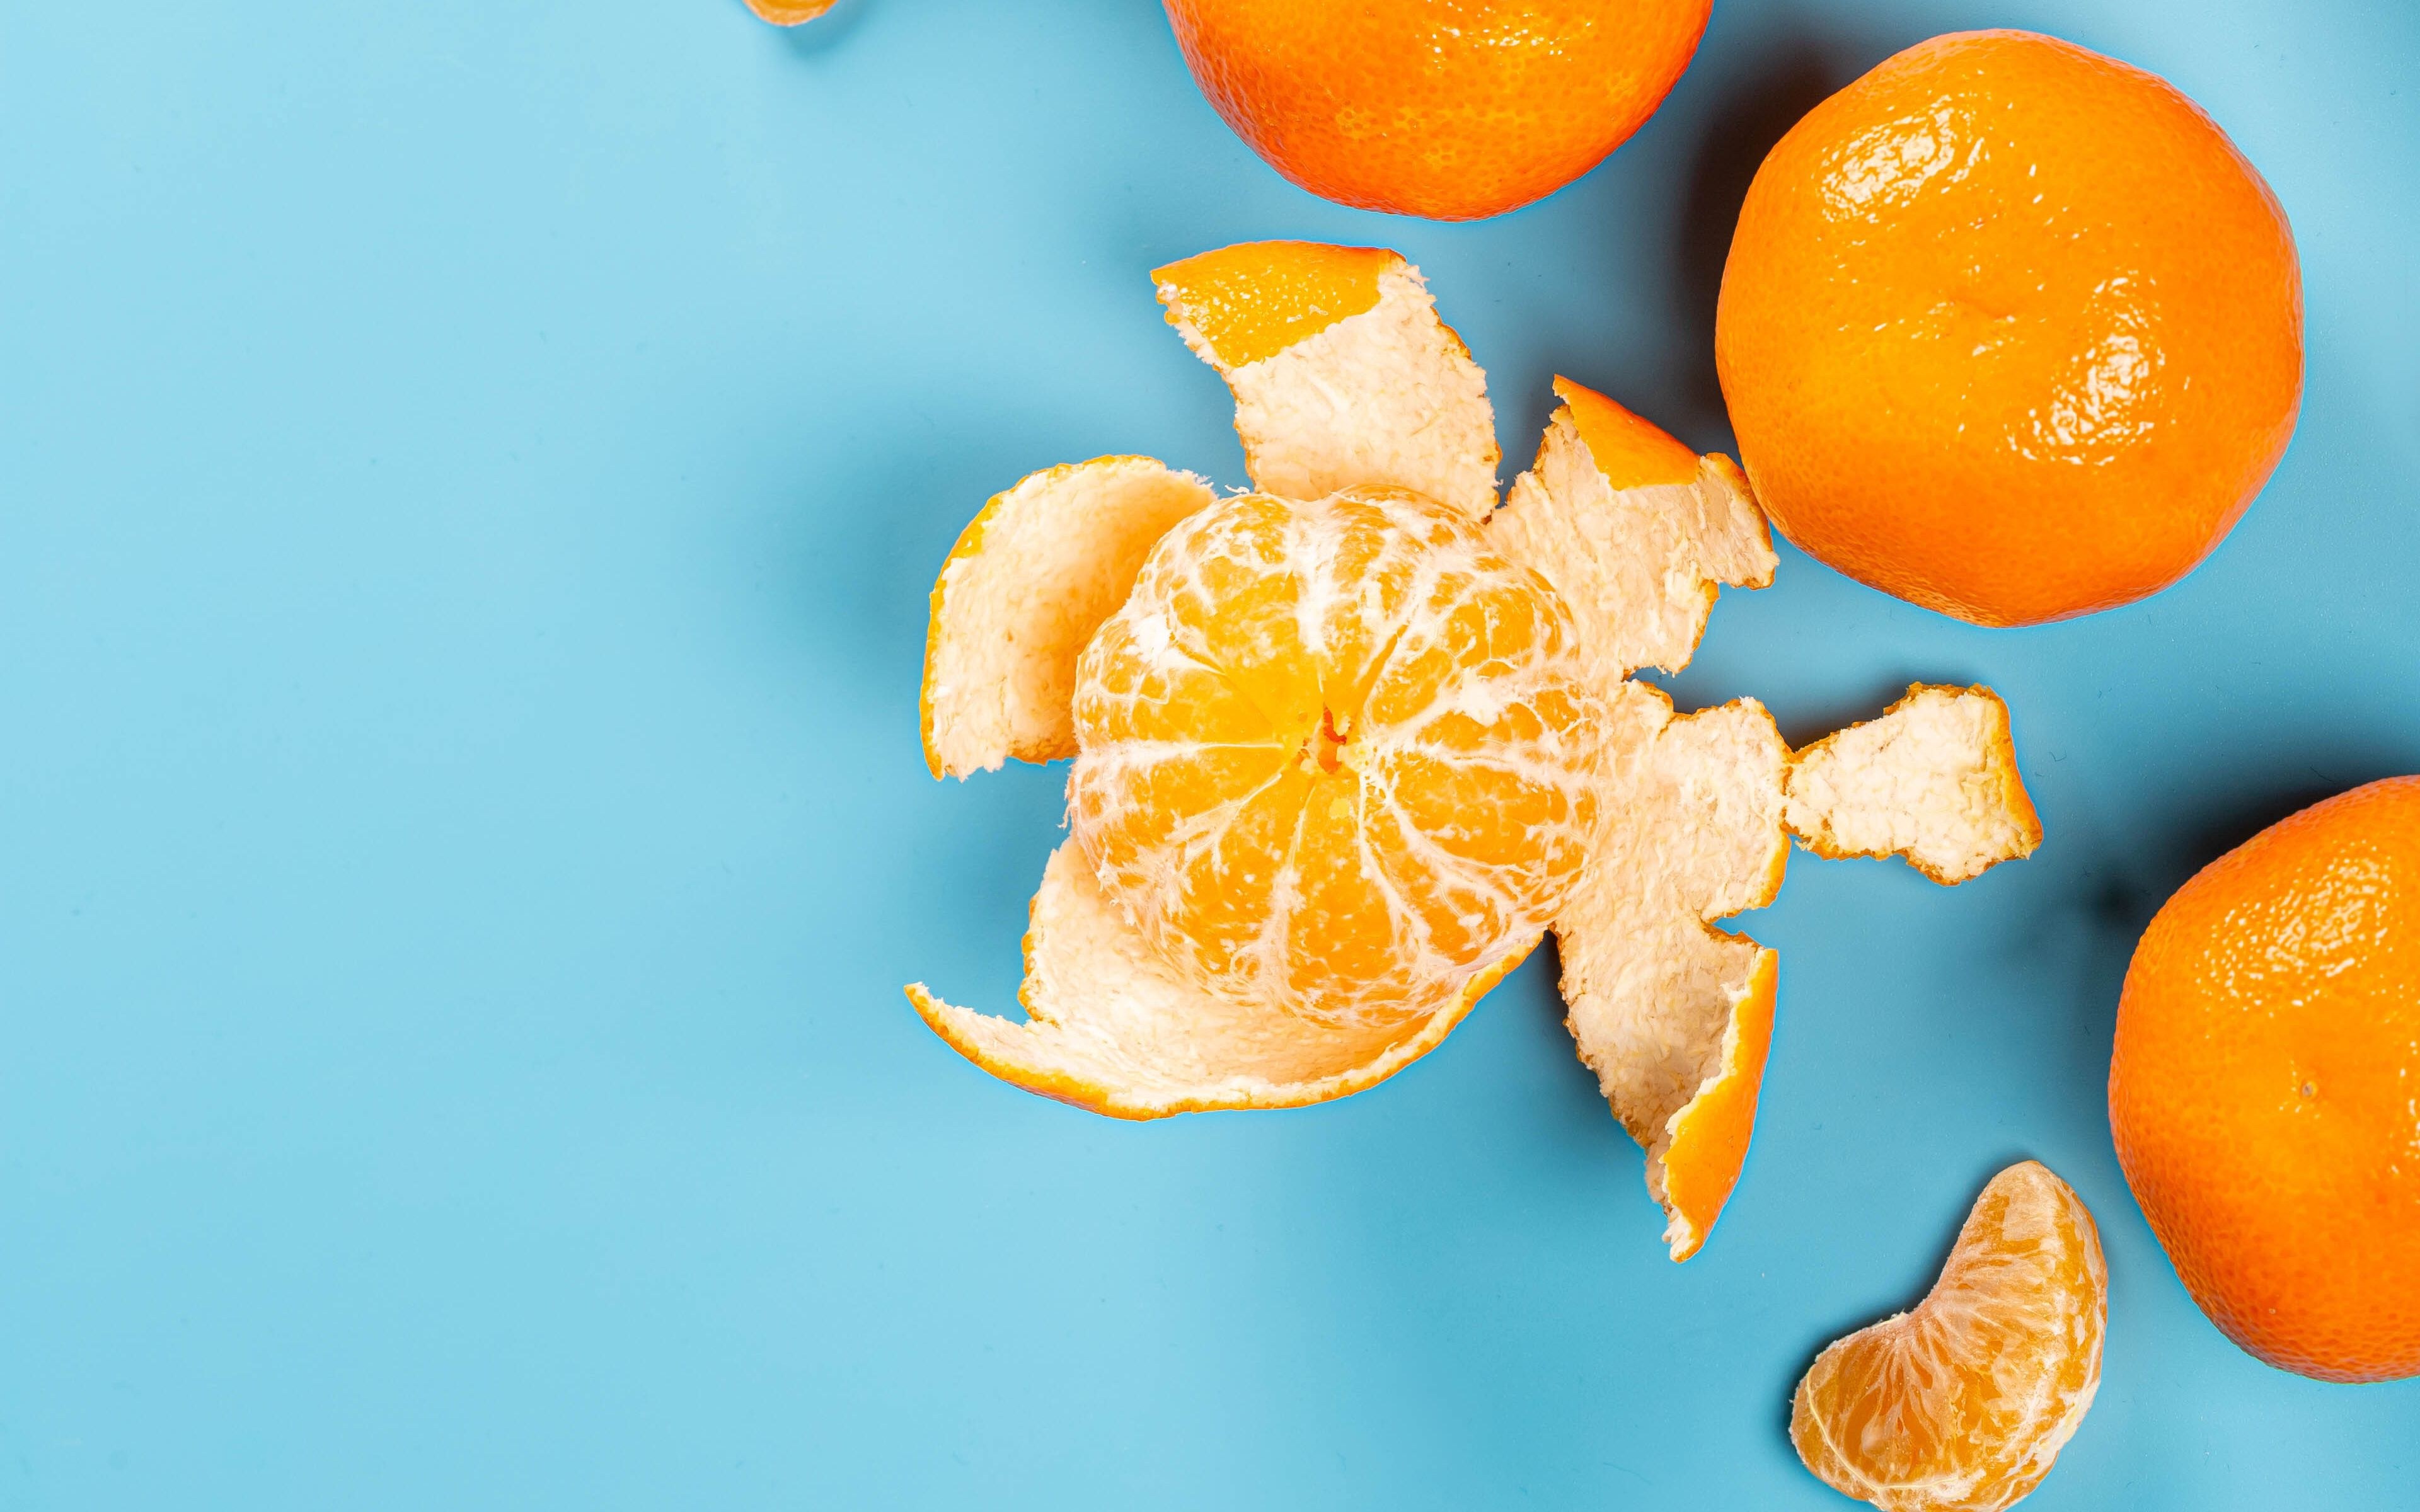 Мандарин citrus. Мандаринка цитрус. Танжерин цитрус. Цитрус мандарин +апельсин. Апельсины на столе.